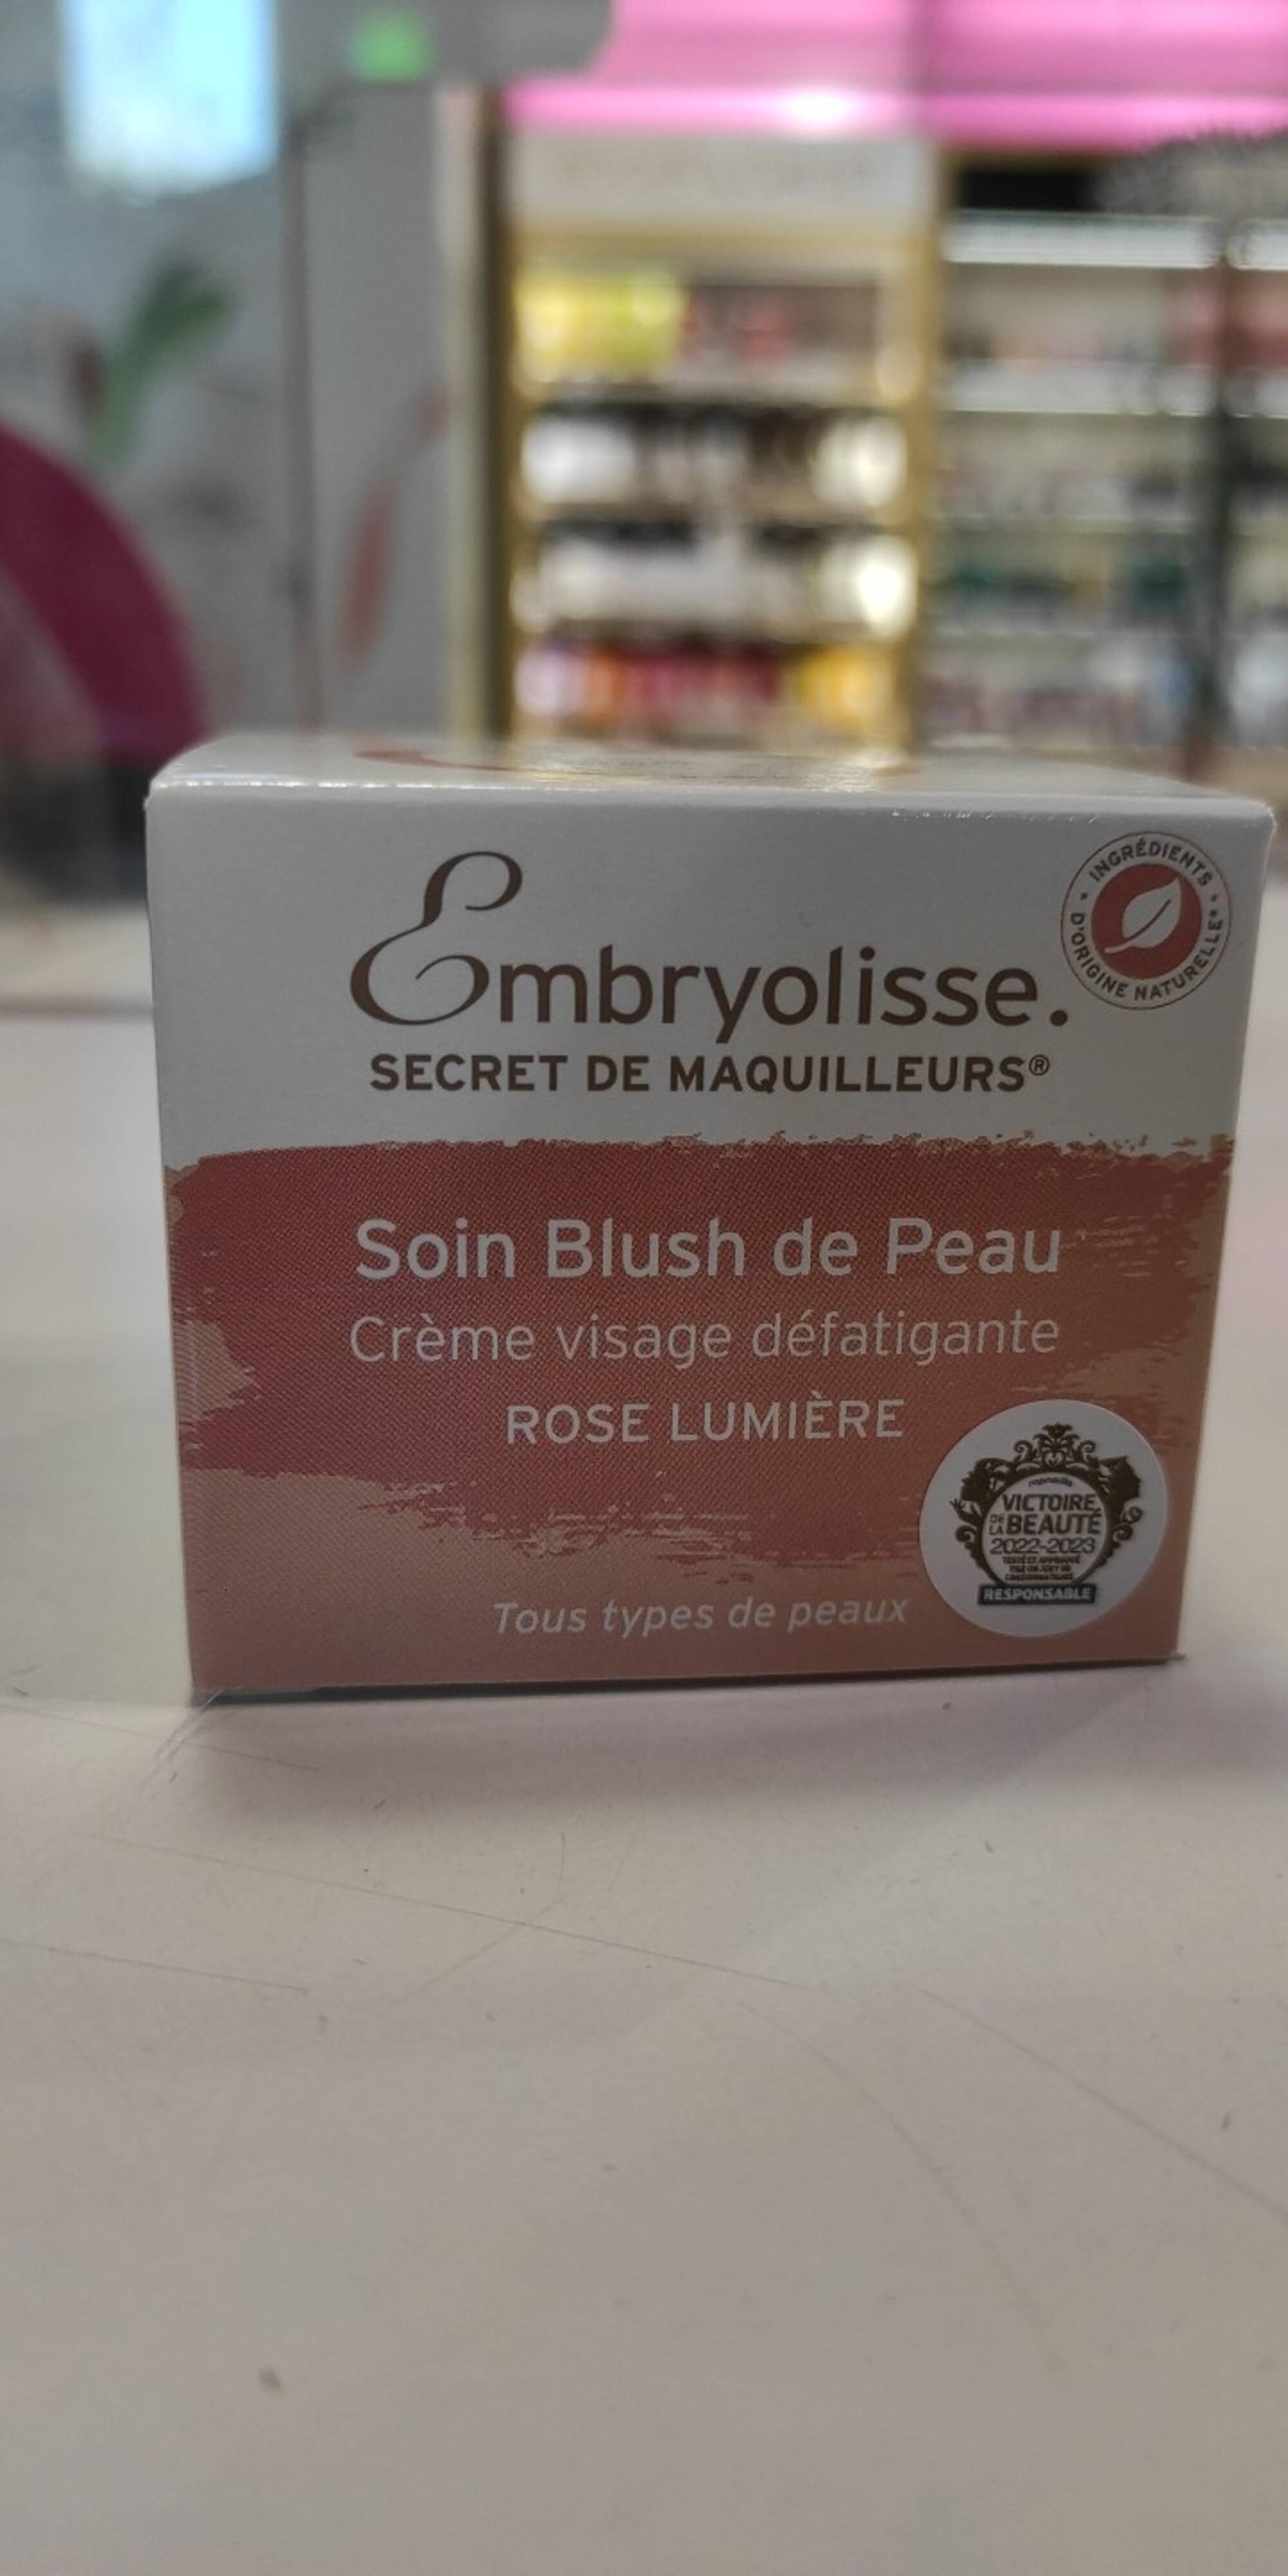 EMBRYOLISSE - Soins blush de peau - Crème visage défatigante rose lumière